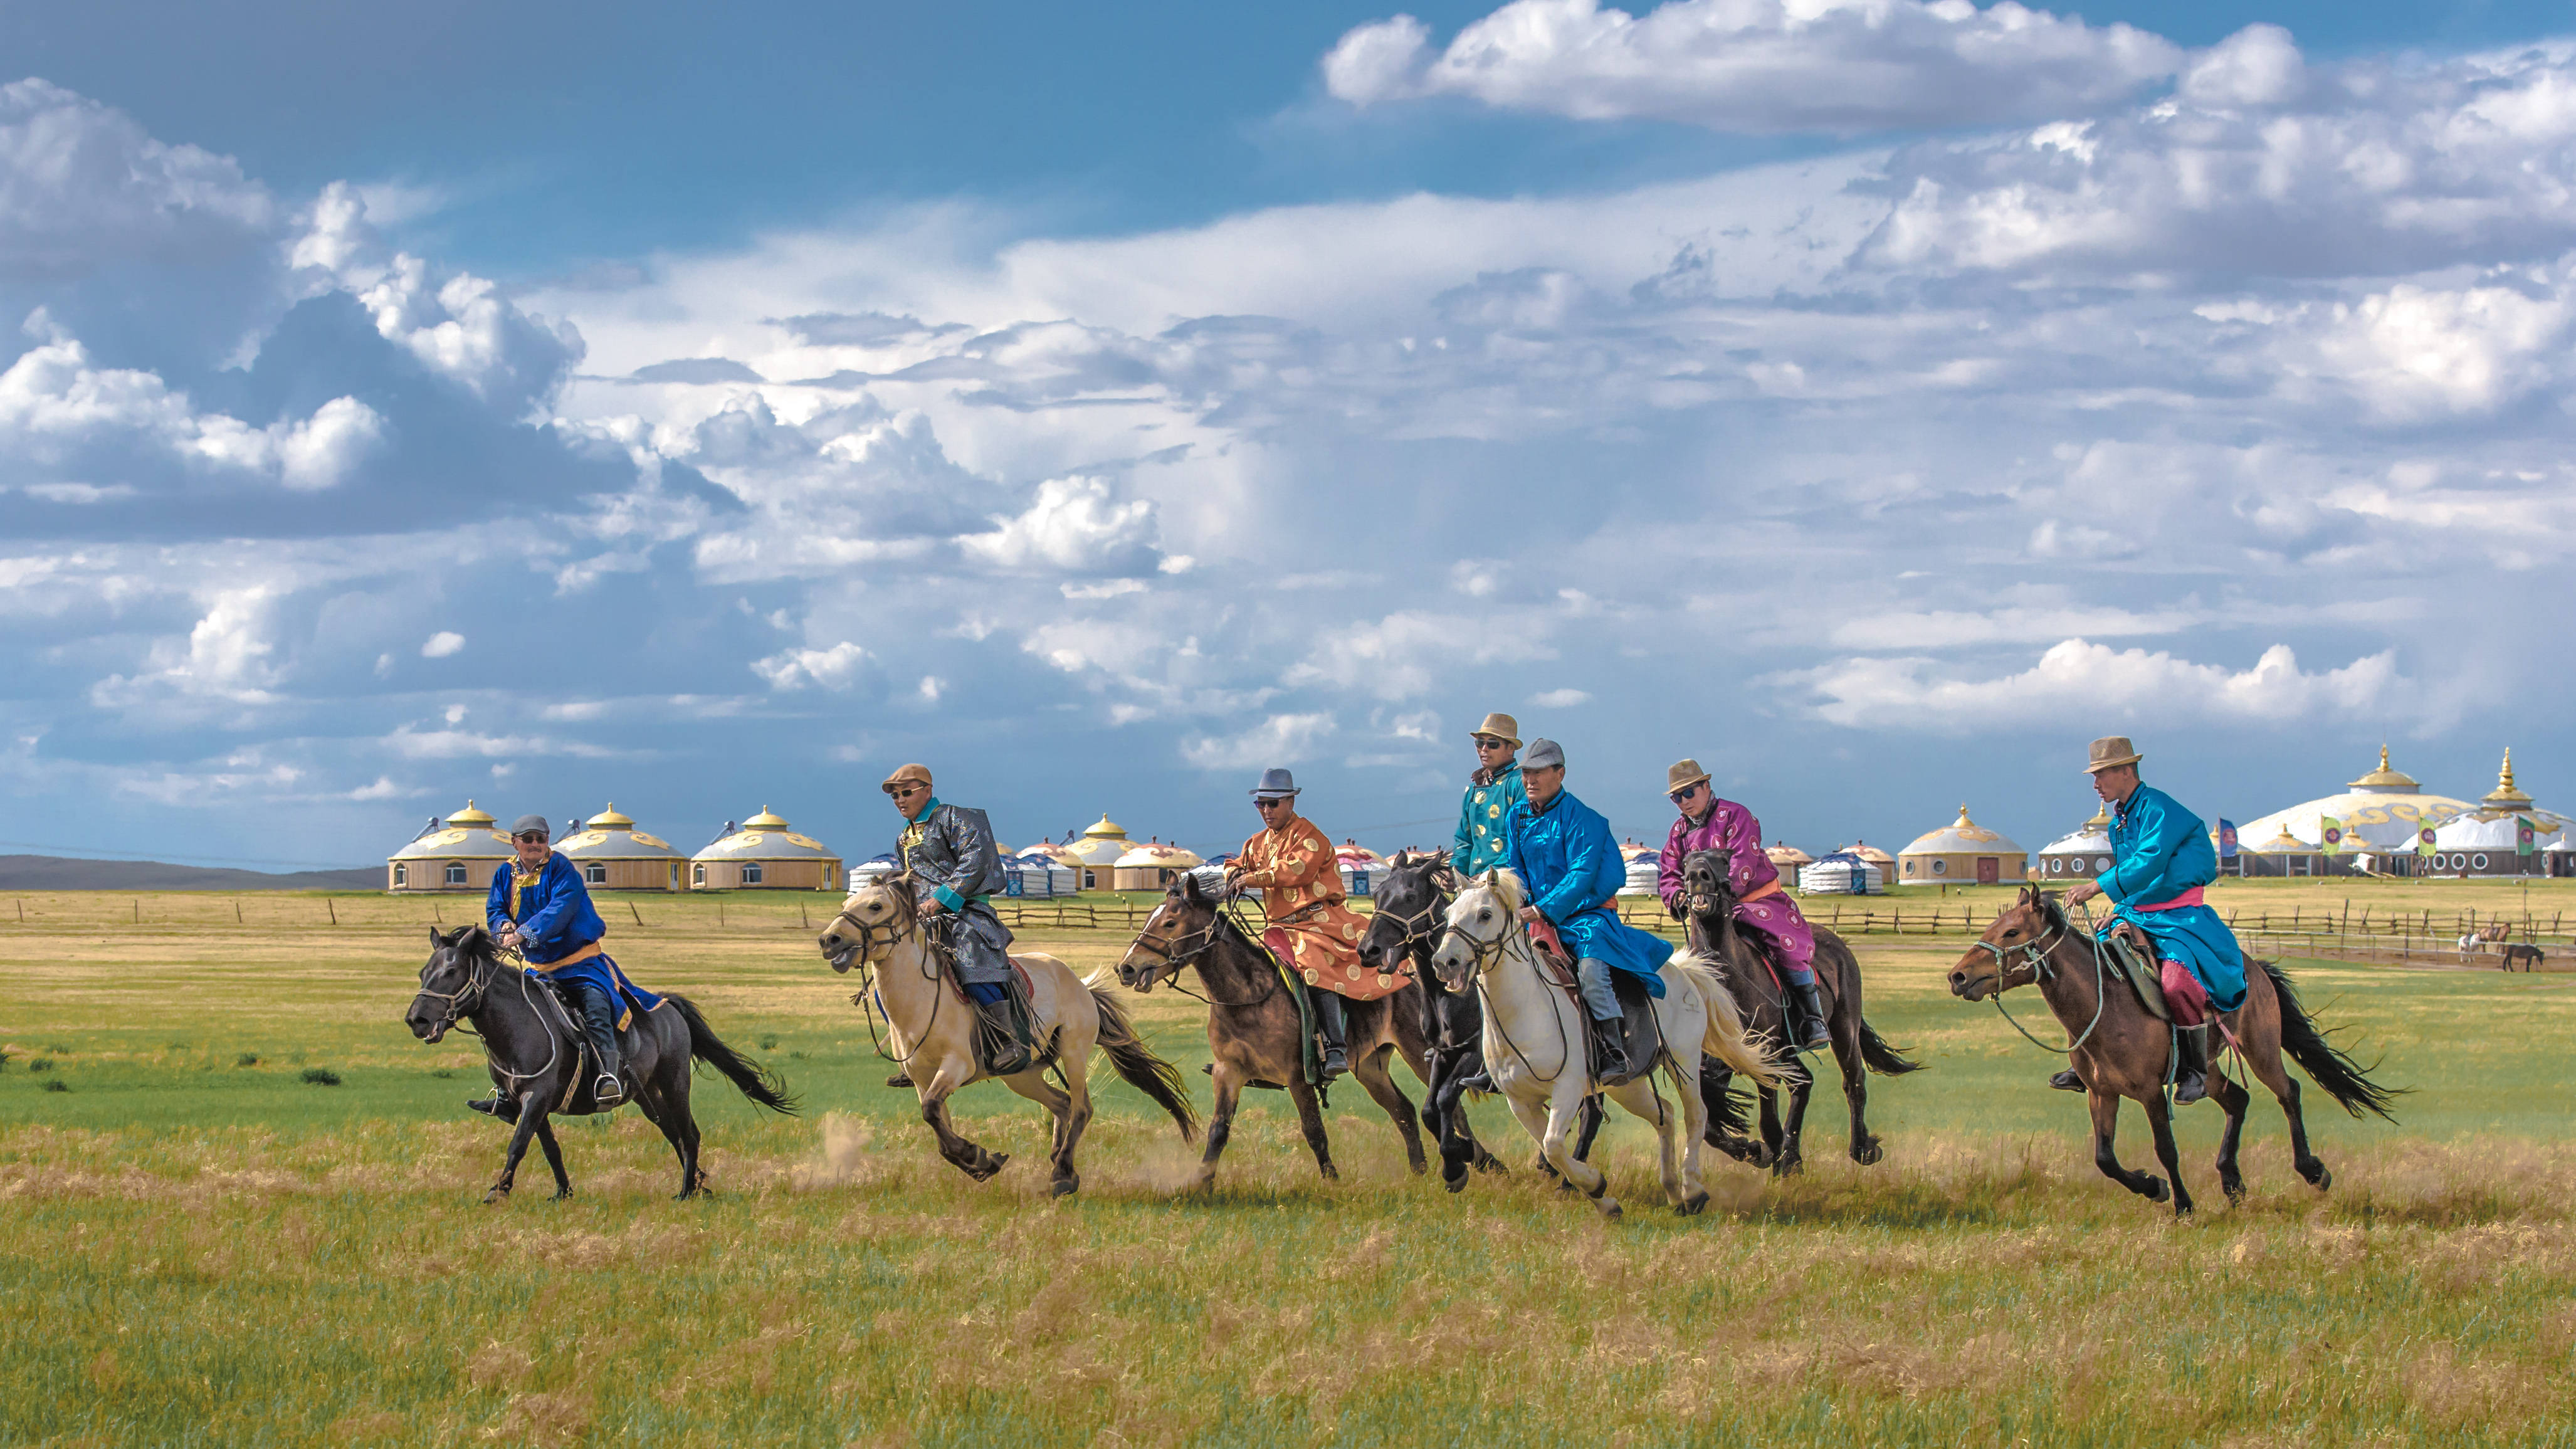 走进天堂般的乌珠穆沁草原,在蒙古汗城体验蒙古人独特的游牧生活.